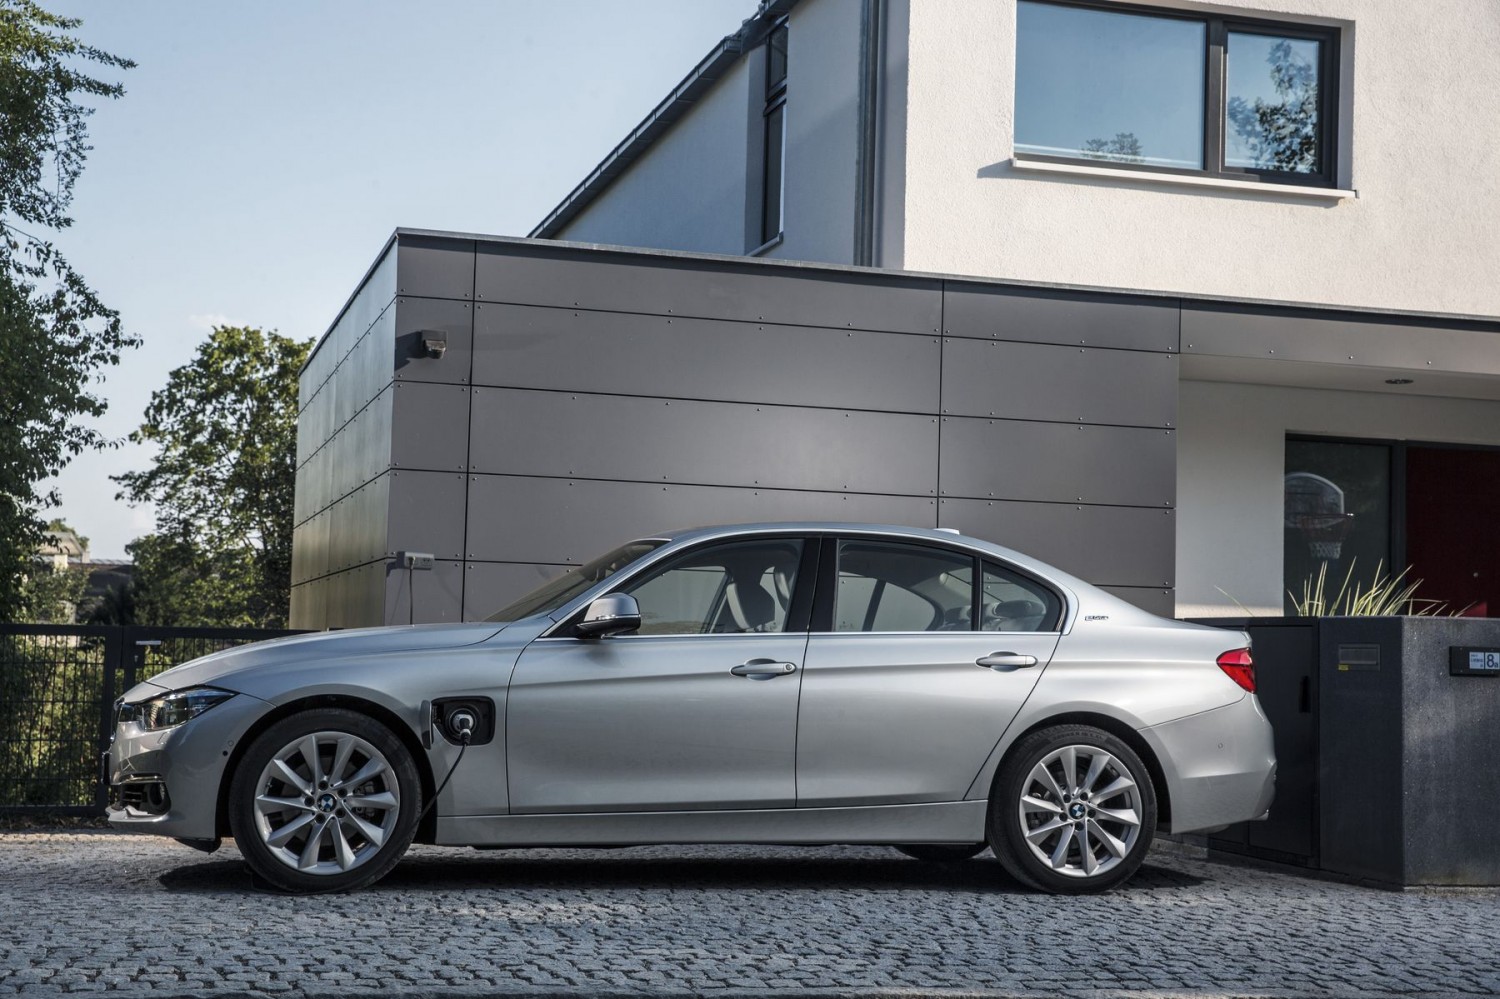 Фотография к новости Рекламные войны: BMW предлагает не ждать седан Tesla